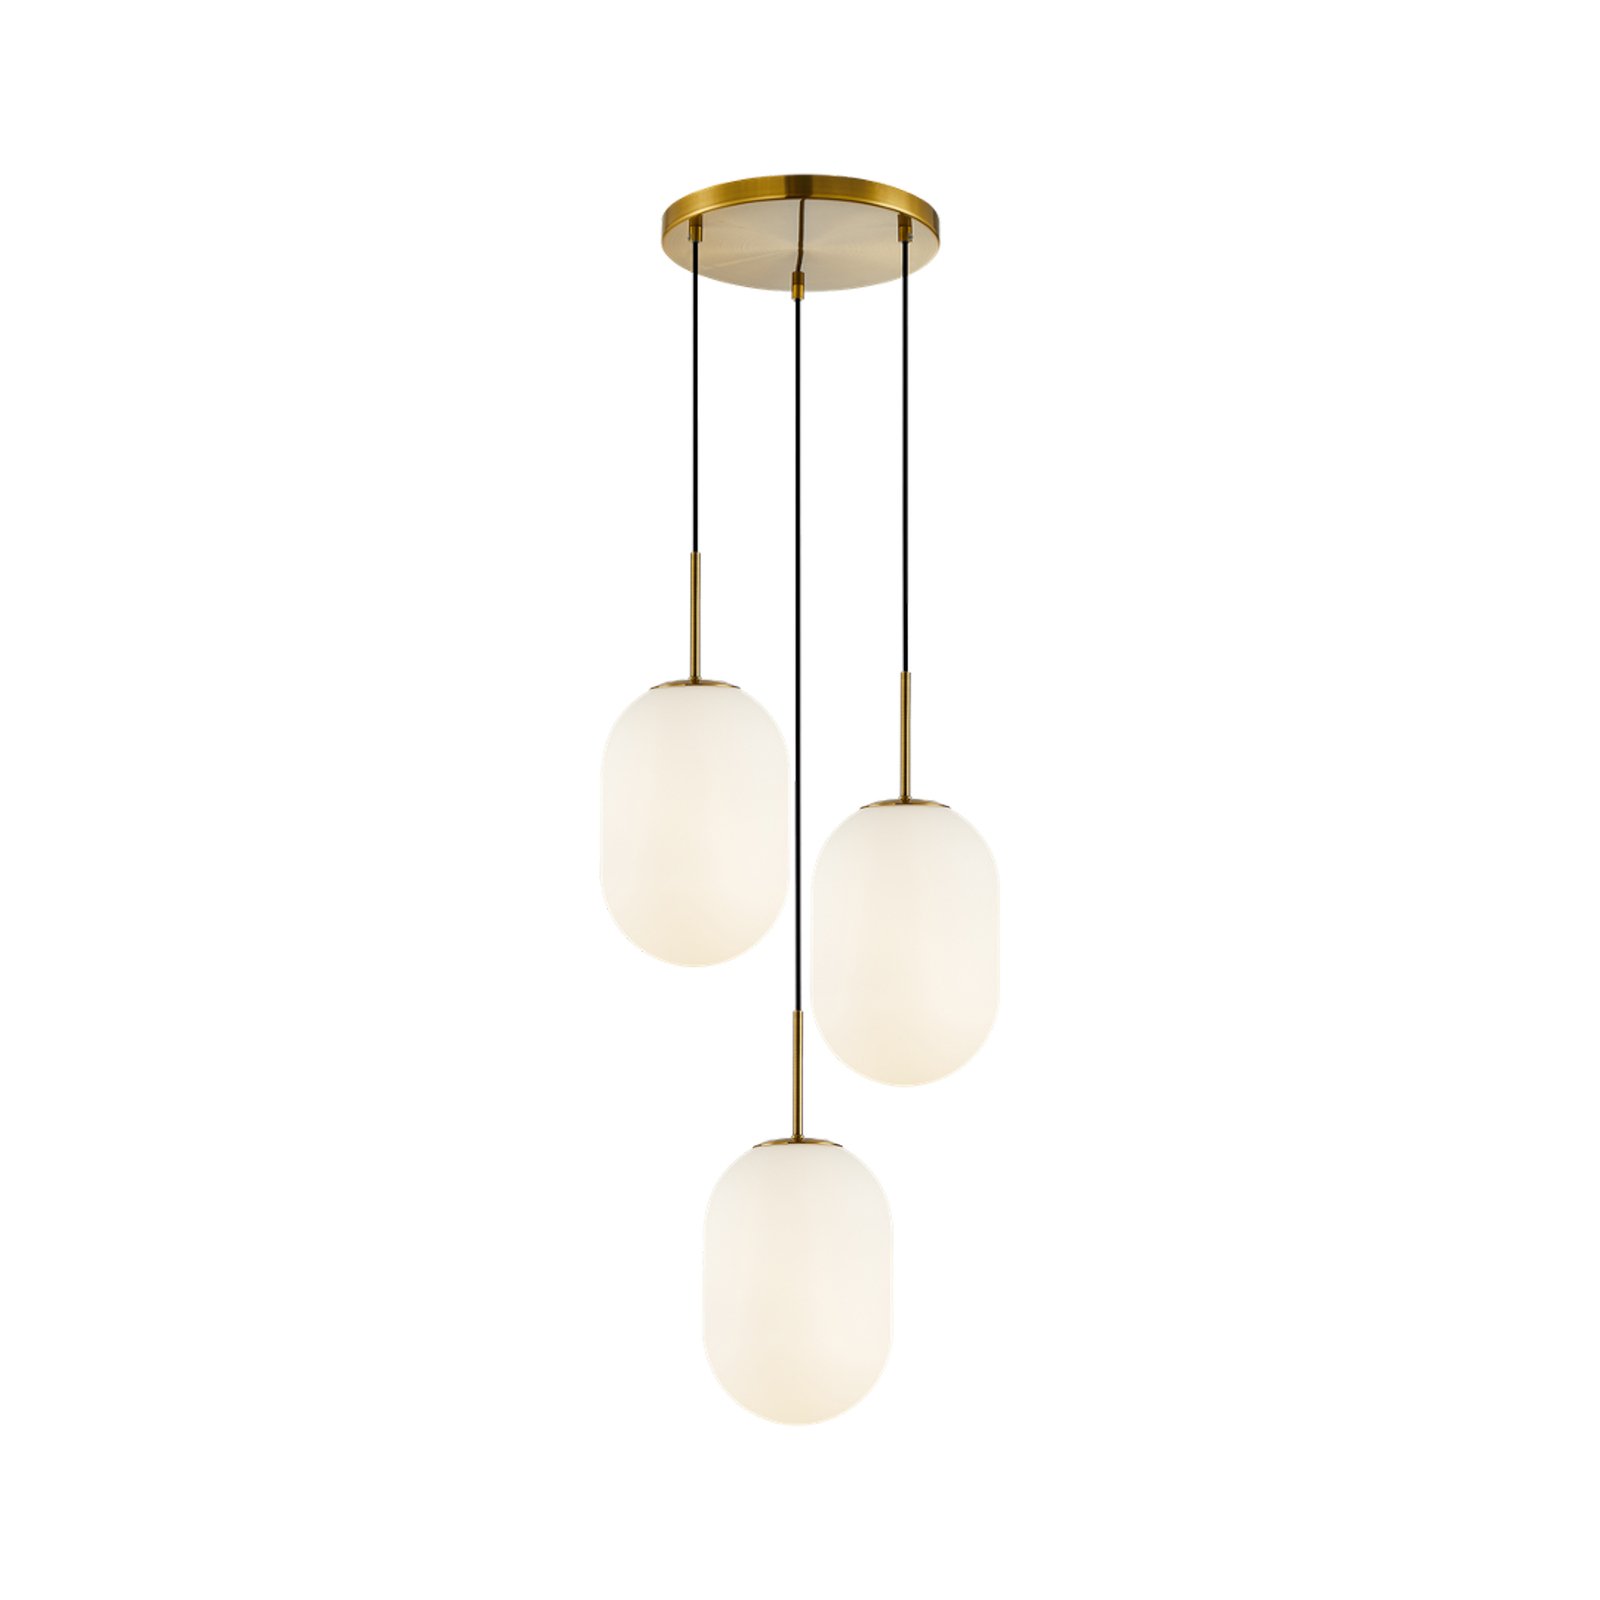 Hanglamp Alias, metaal goudkleurig opaalglas, 3-lamps rond